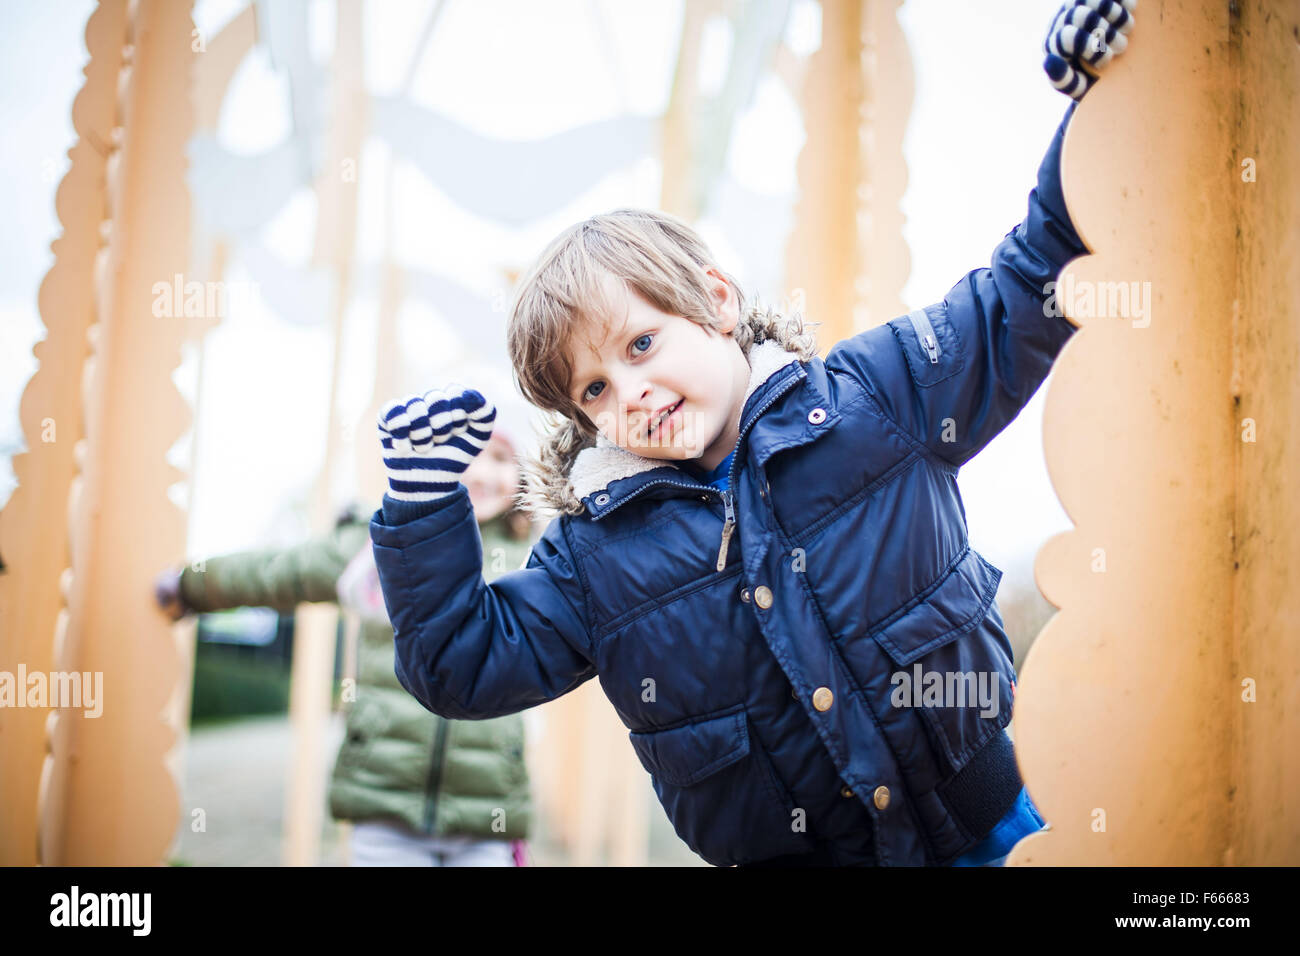 Foto der Kinder oder Kind in Winterkleidung, lächelnd, glücklich, verspielt Stockfoto